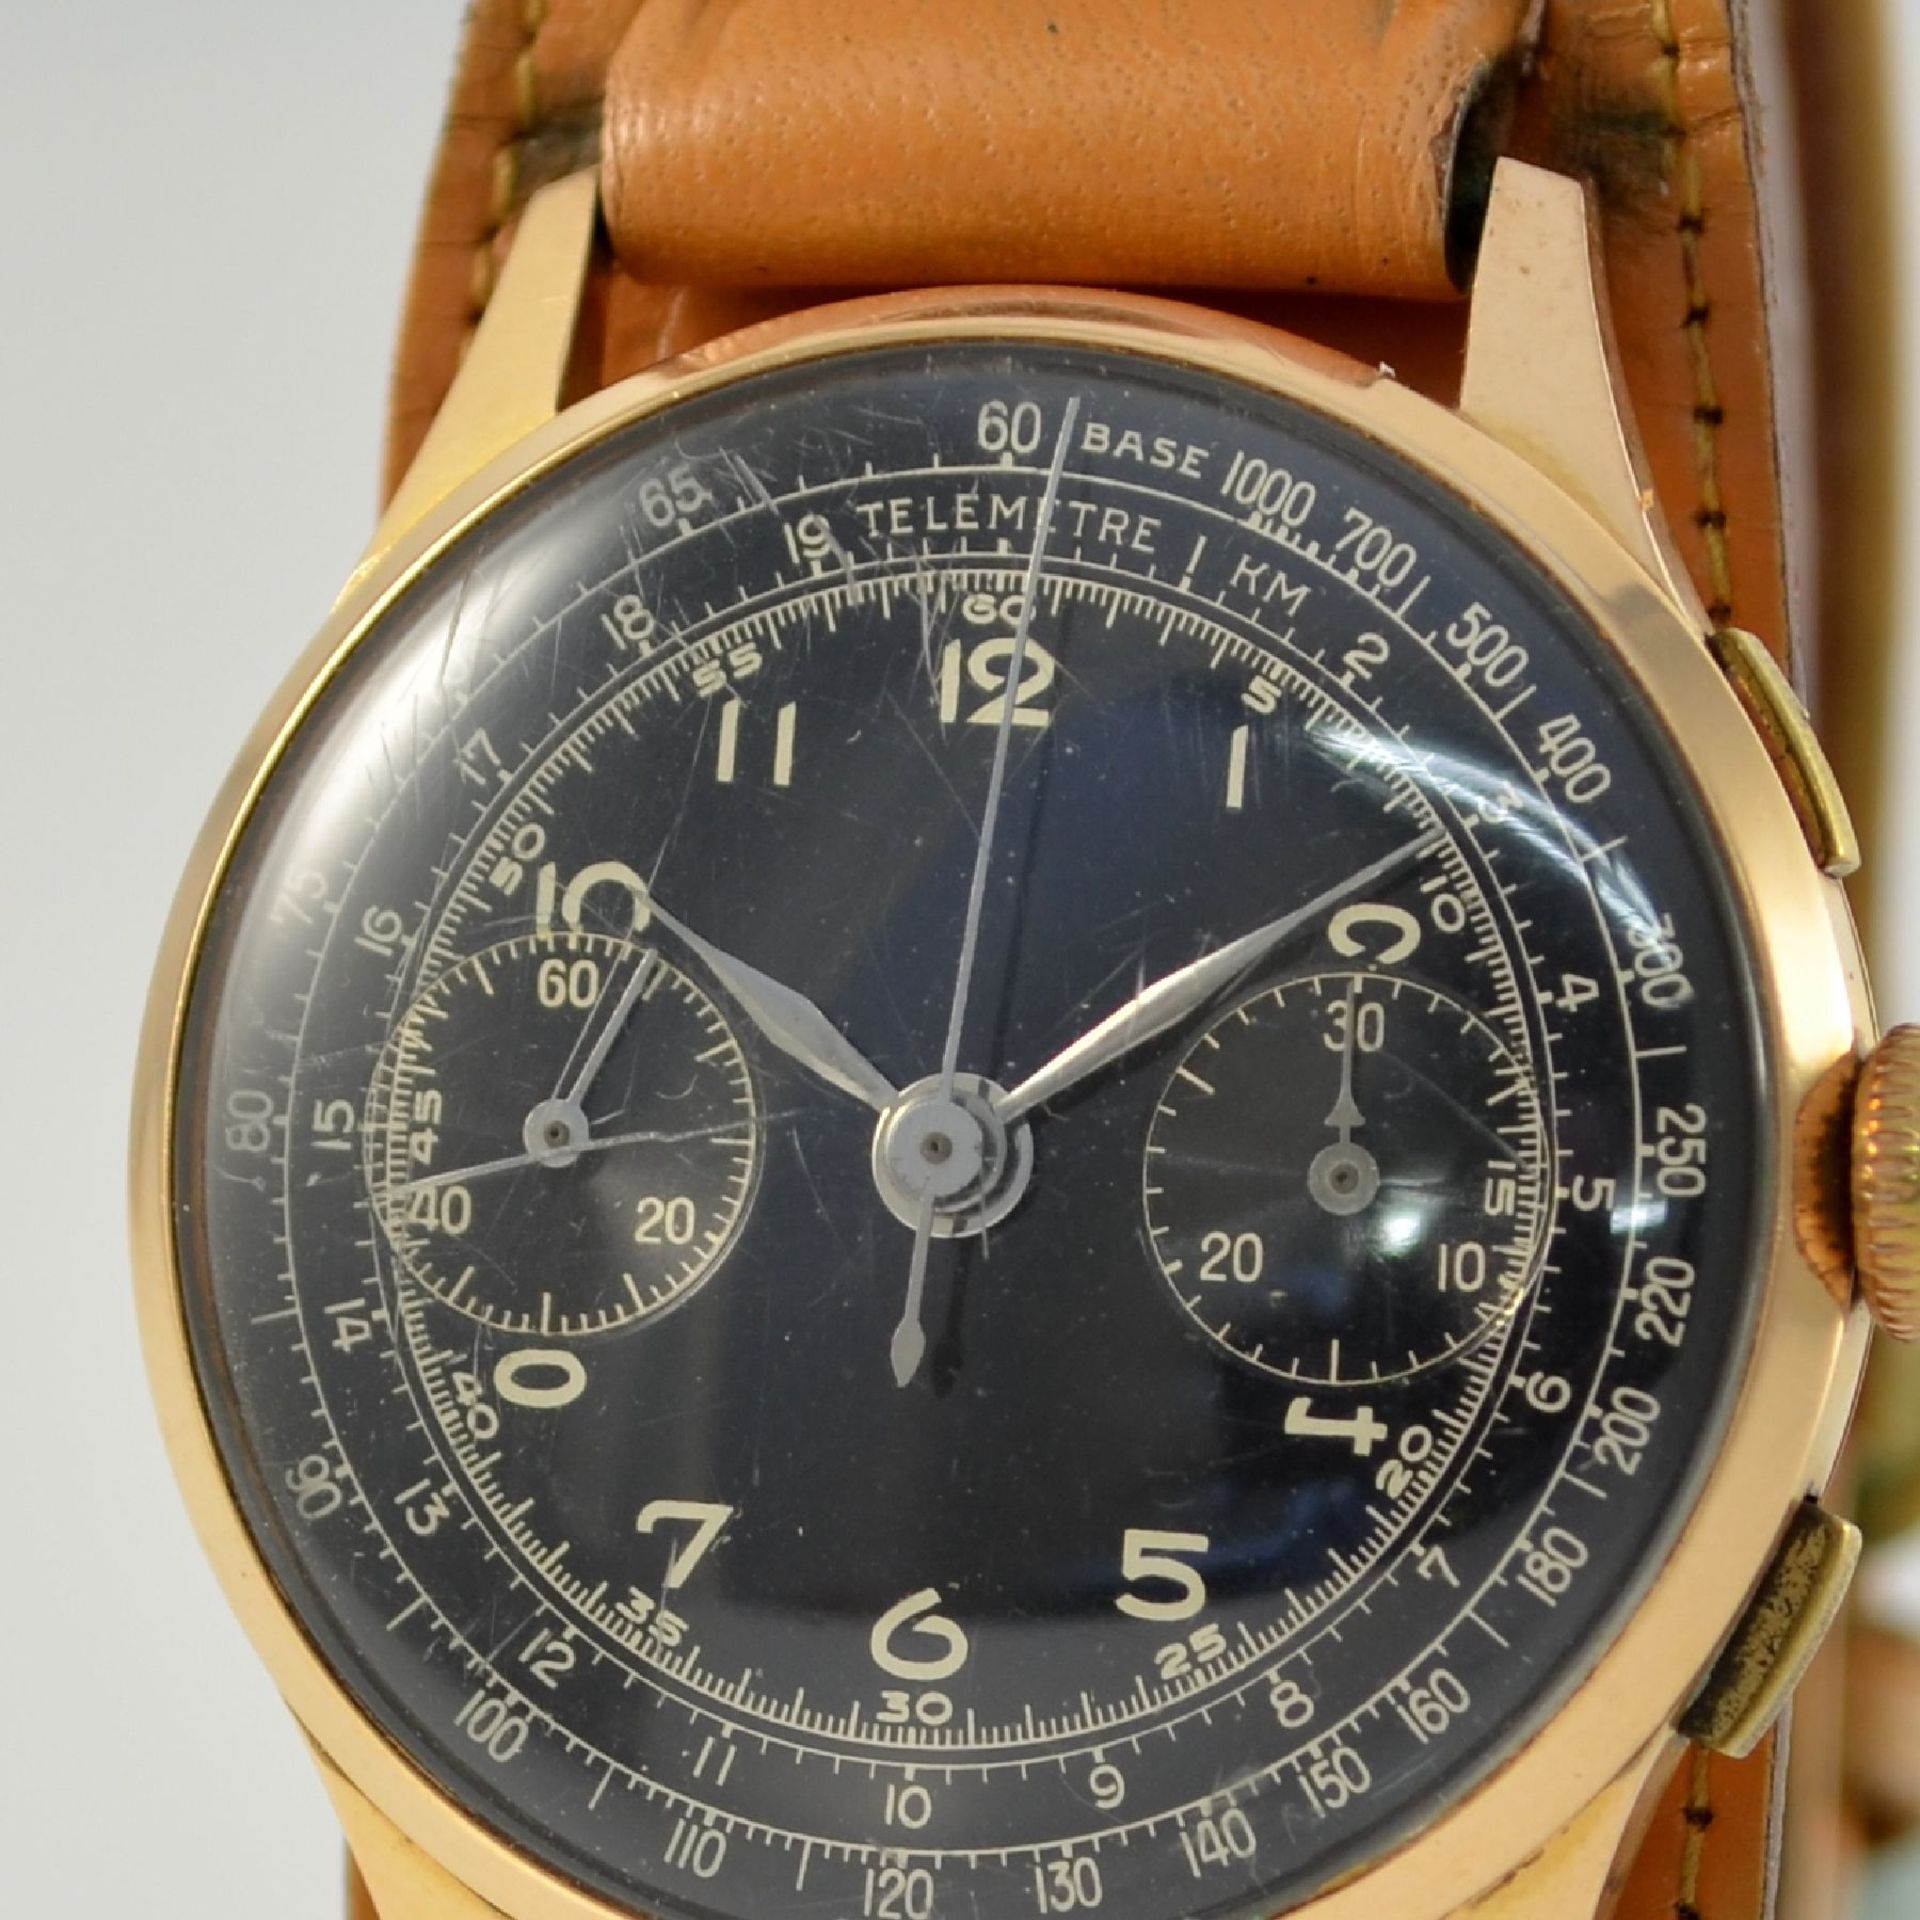 Armbandchronograph in RG 750/000, Schweiz um 1950, Handaufzug, Boden aufgedr., schwarzes Zifferbl. - Bild 4 aus 11